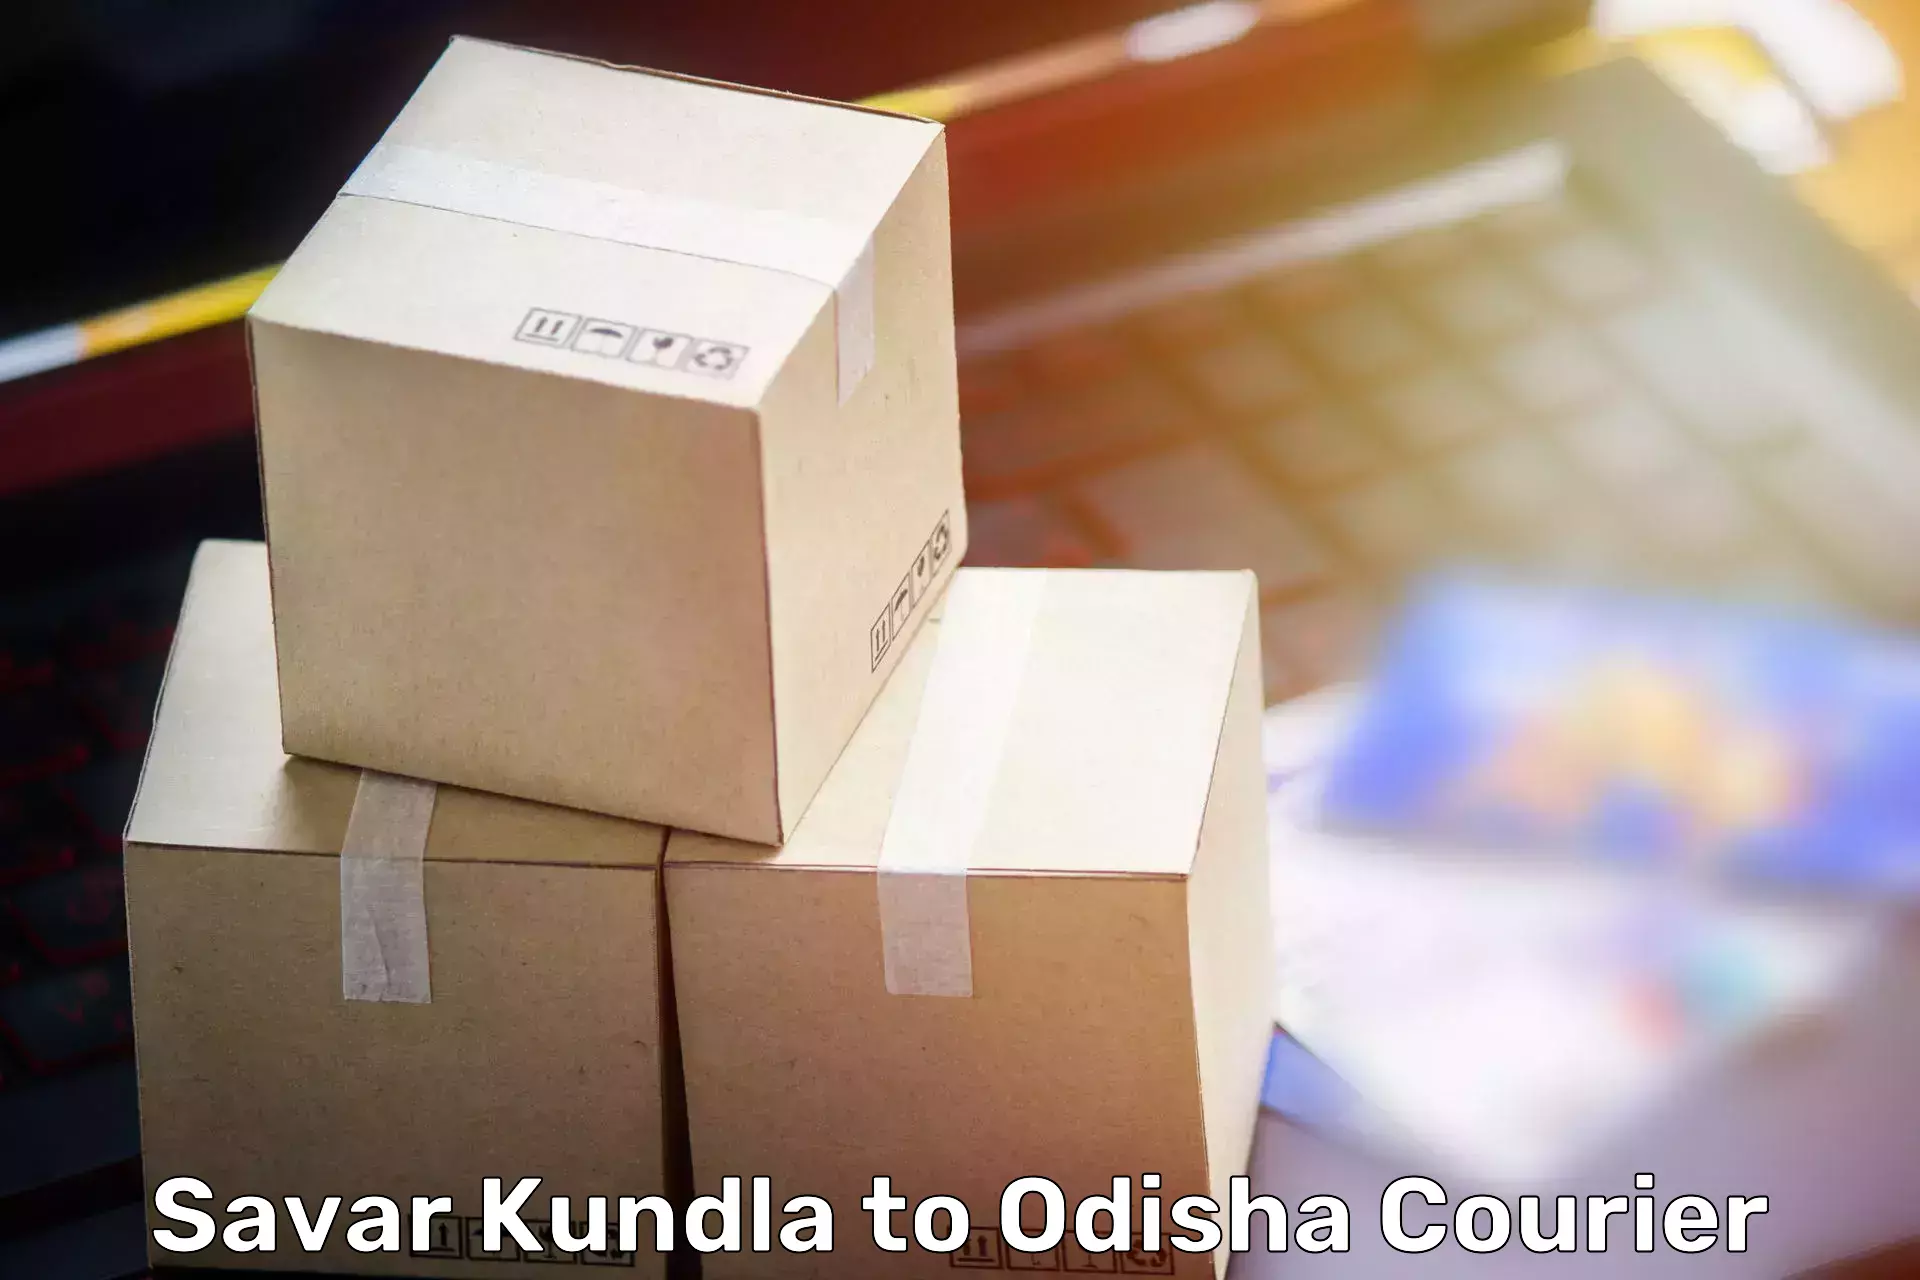 Reliable furniture transport Savar Kundla to Balangir